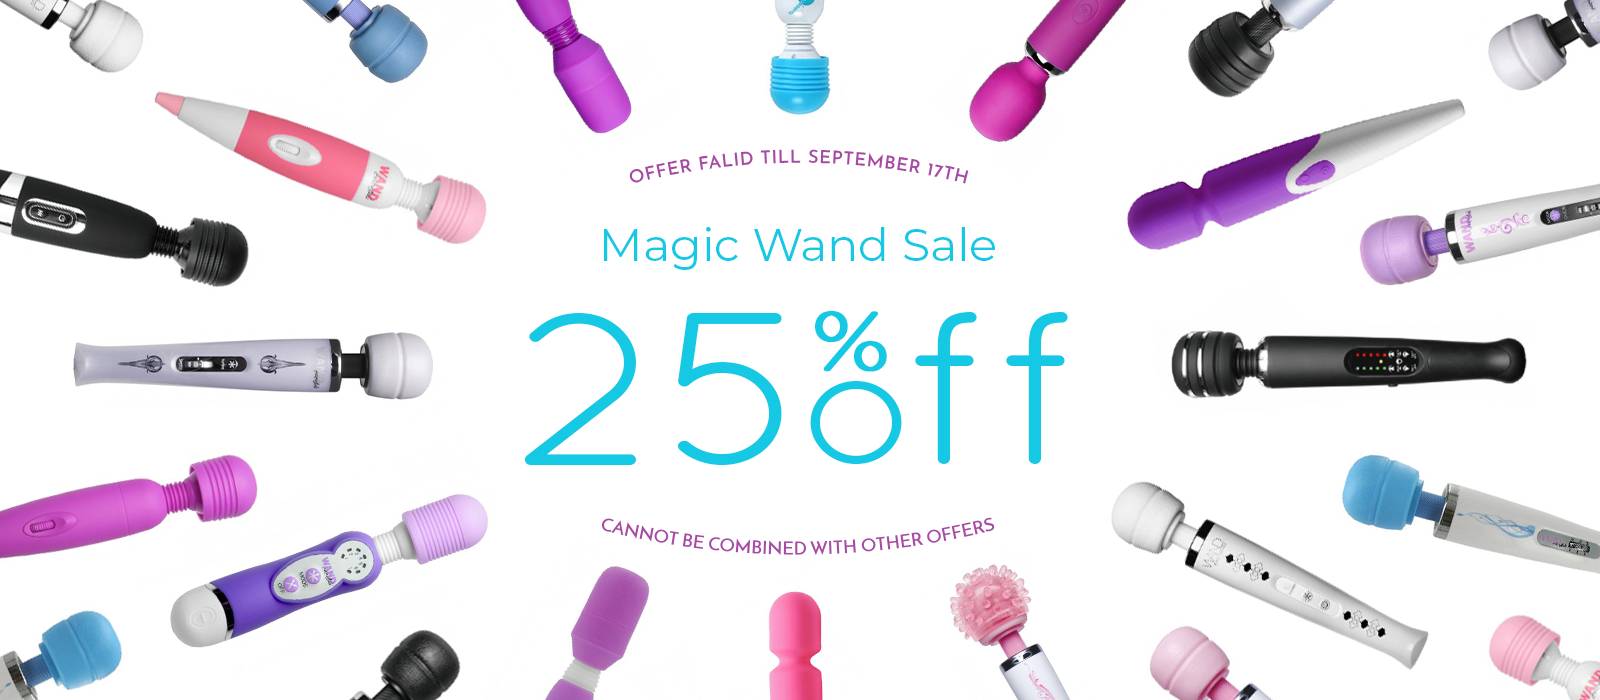 Get 25% off all Magic Wand Vibrators